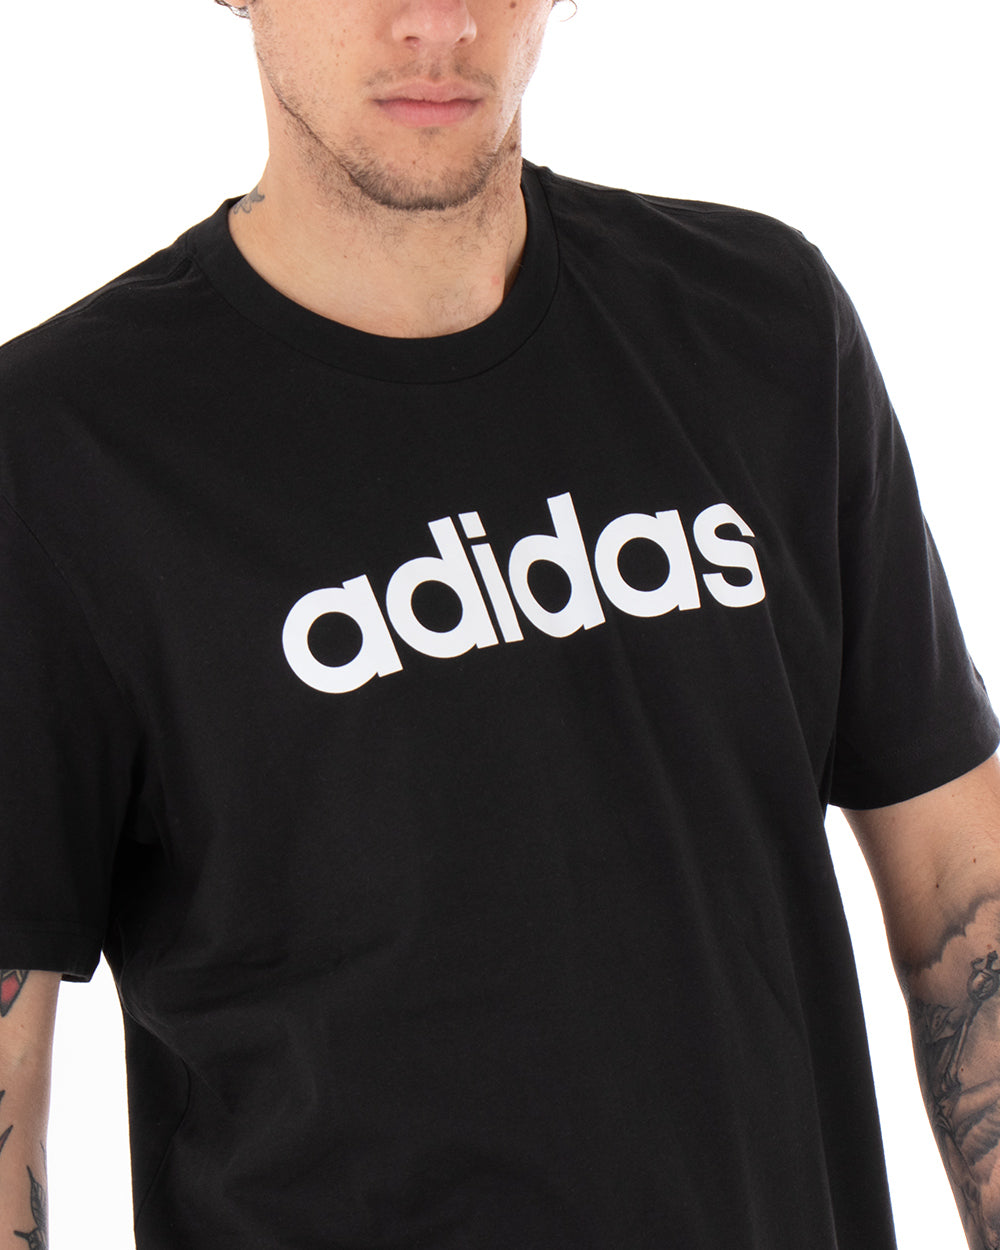 T-shirt Uomo Adidas Logo Lin Tee Stampa Tinta Unita Nera Girocollo Cotone Maniche Corte GIOSAL